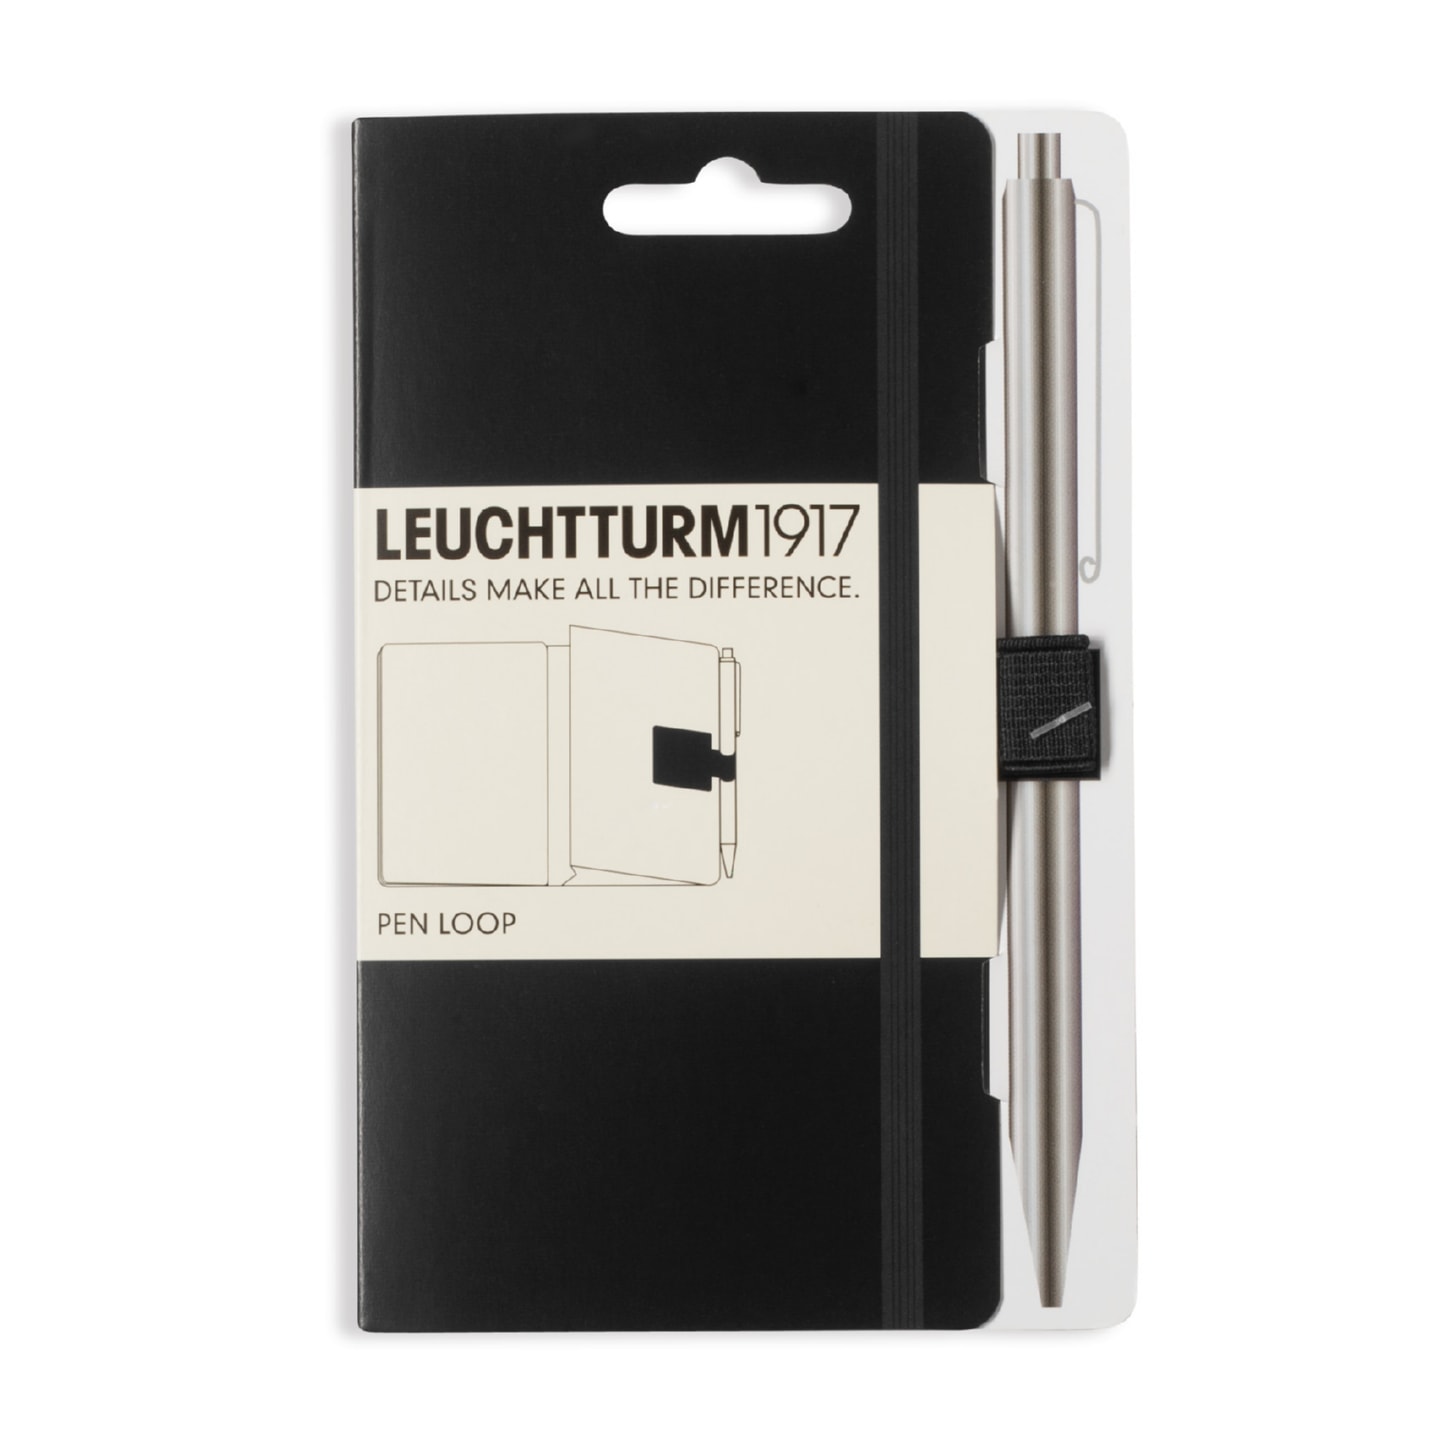 Петля самоклеящаяся Pen Loop для ручек на блокноты Leuchtturm1917 цвет Черный